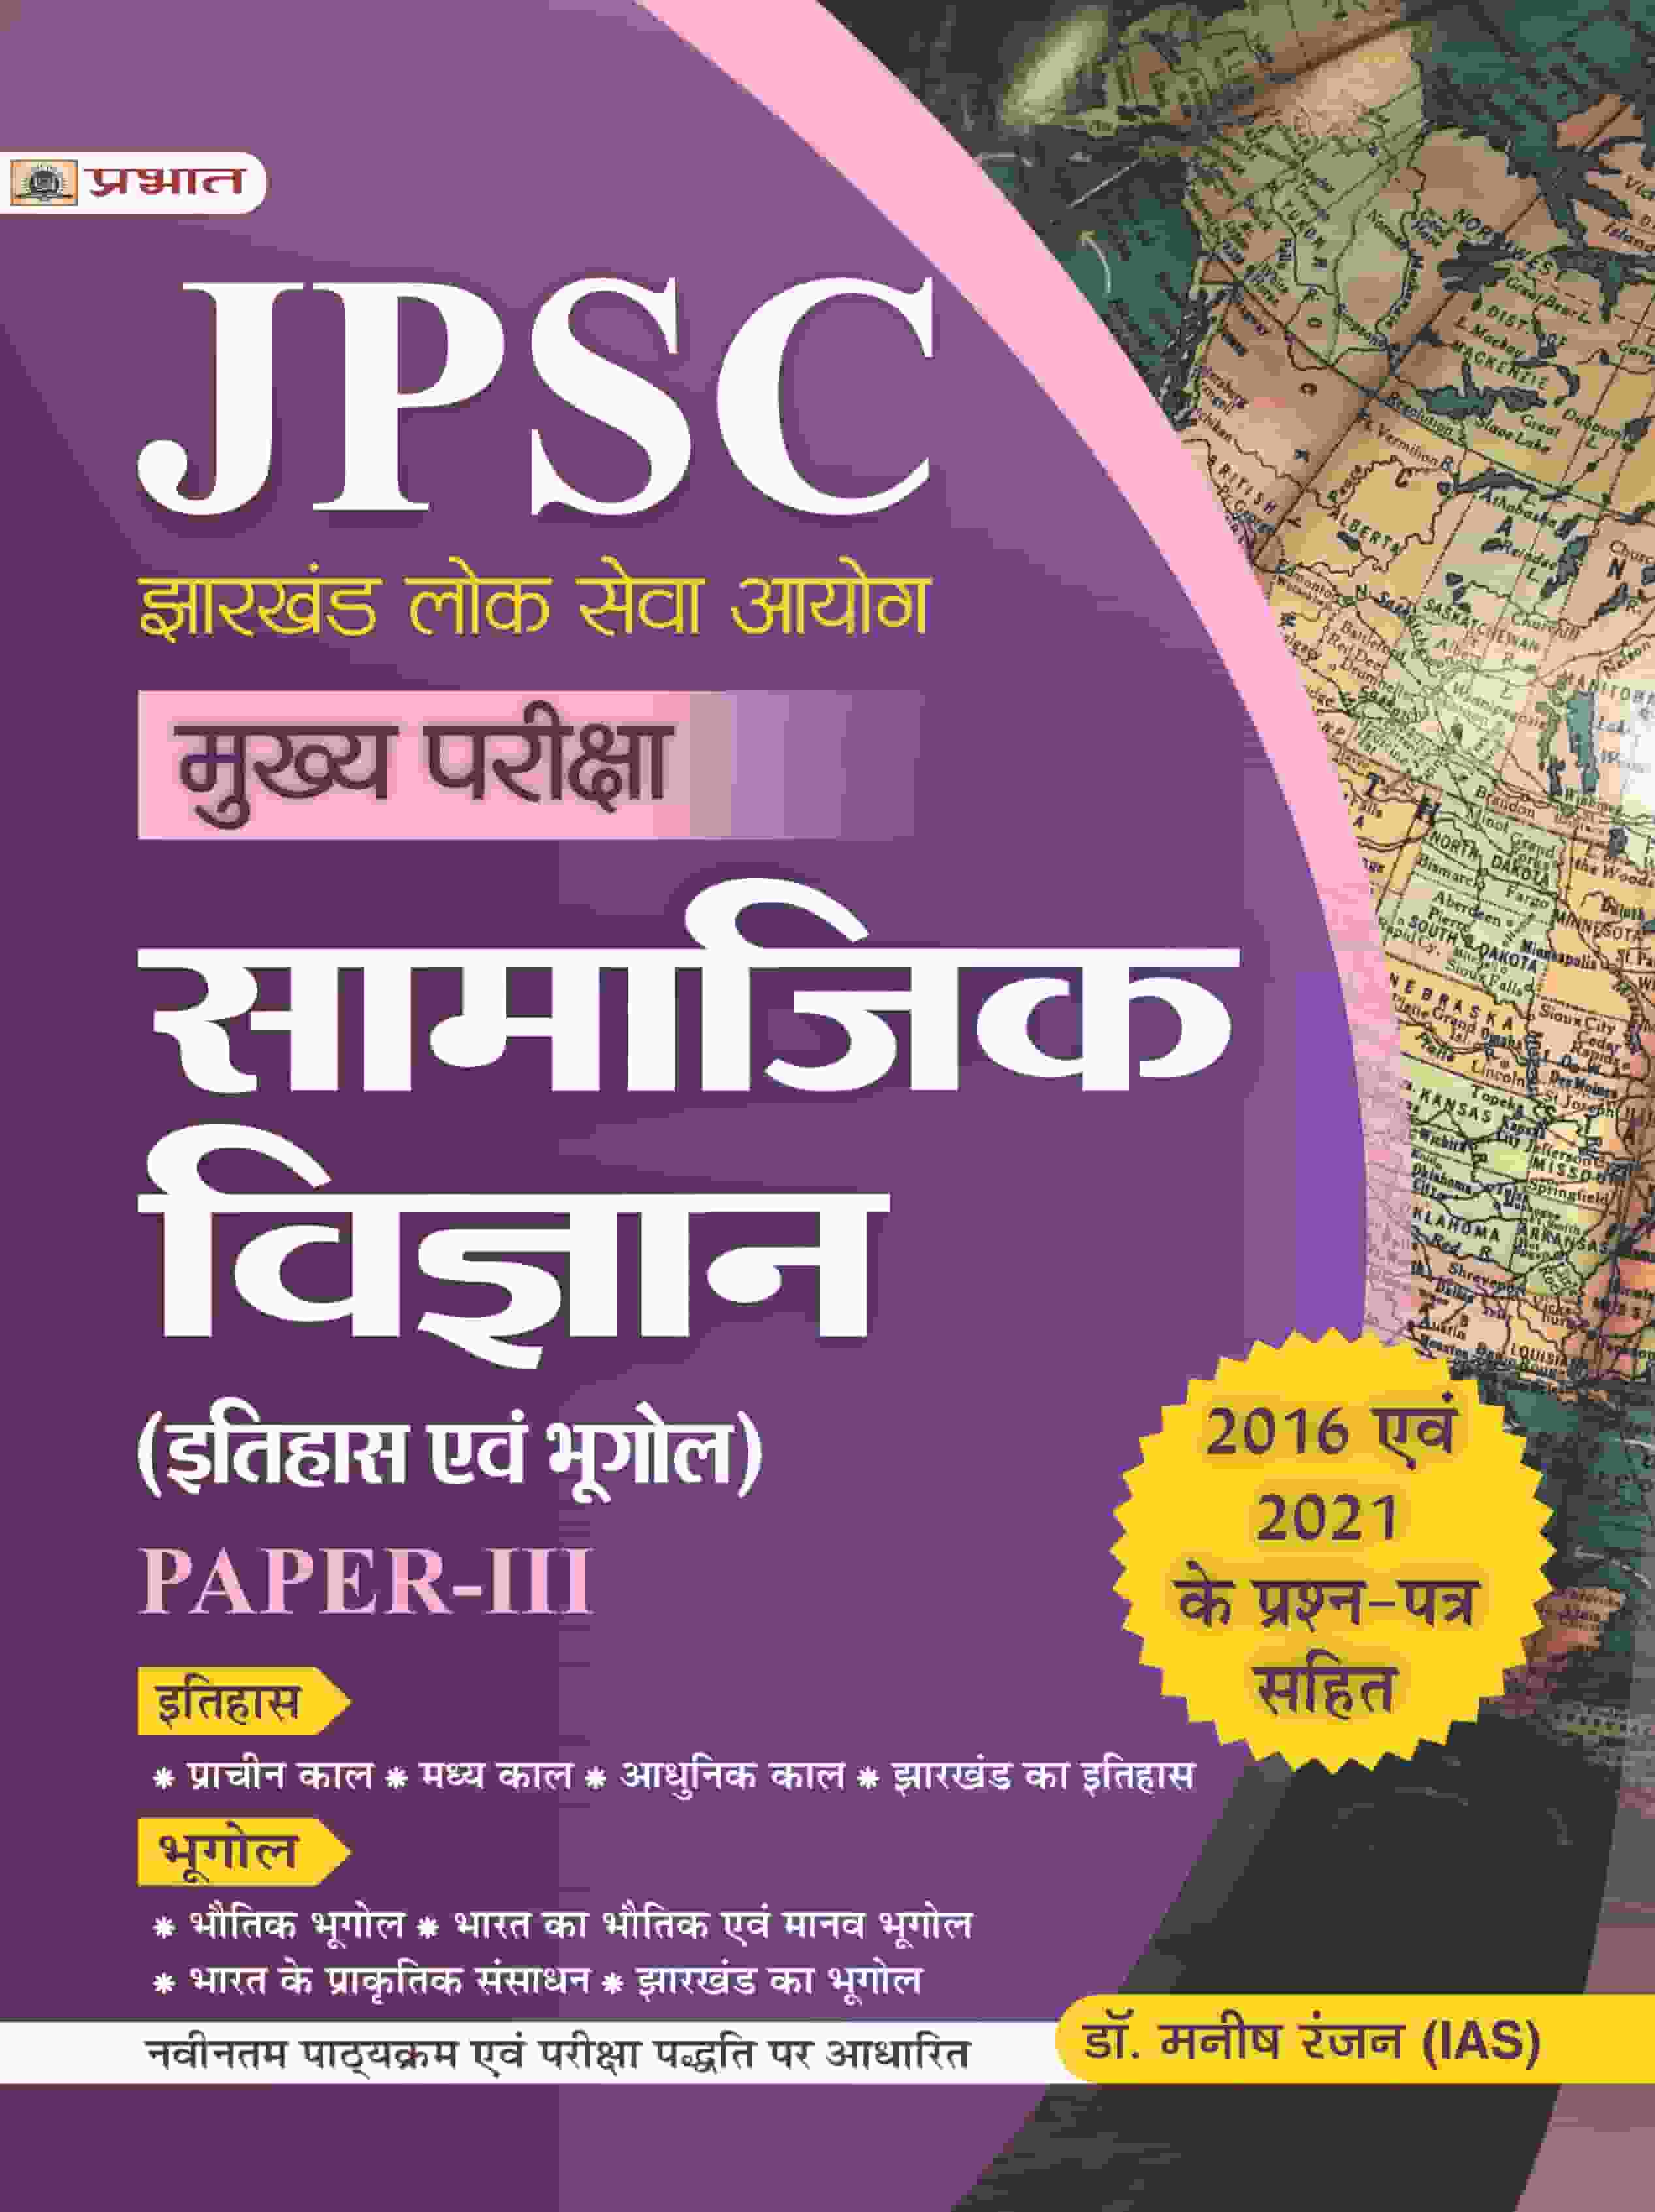 JPSC Mukhya Pariksha Samajik Vigyan (Itihas Evam Bhugol) Paper-III 